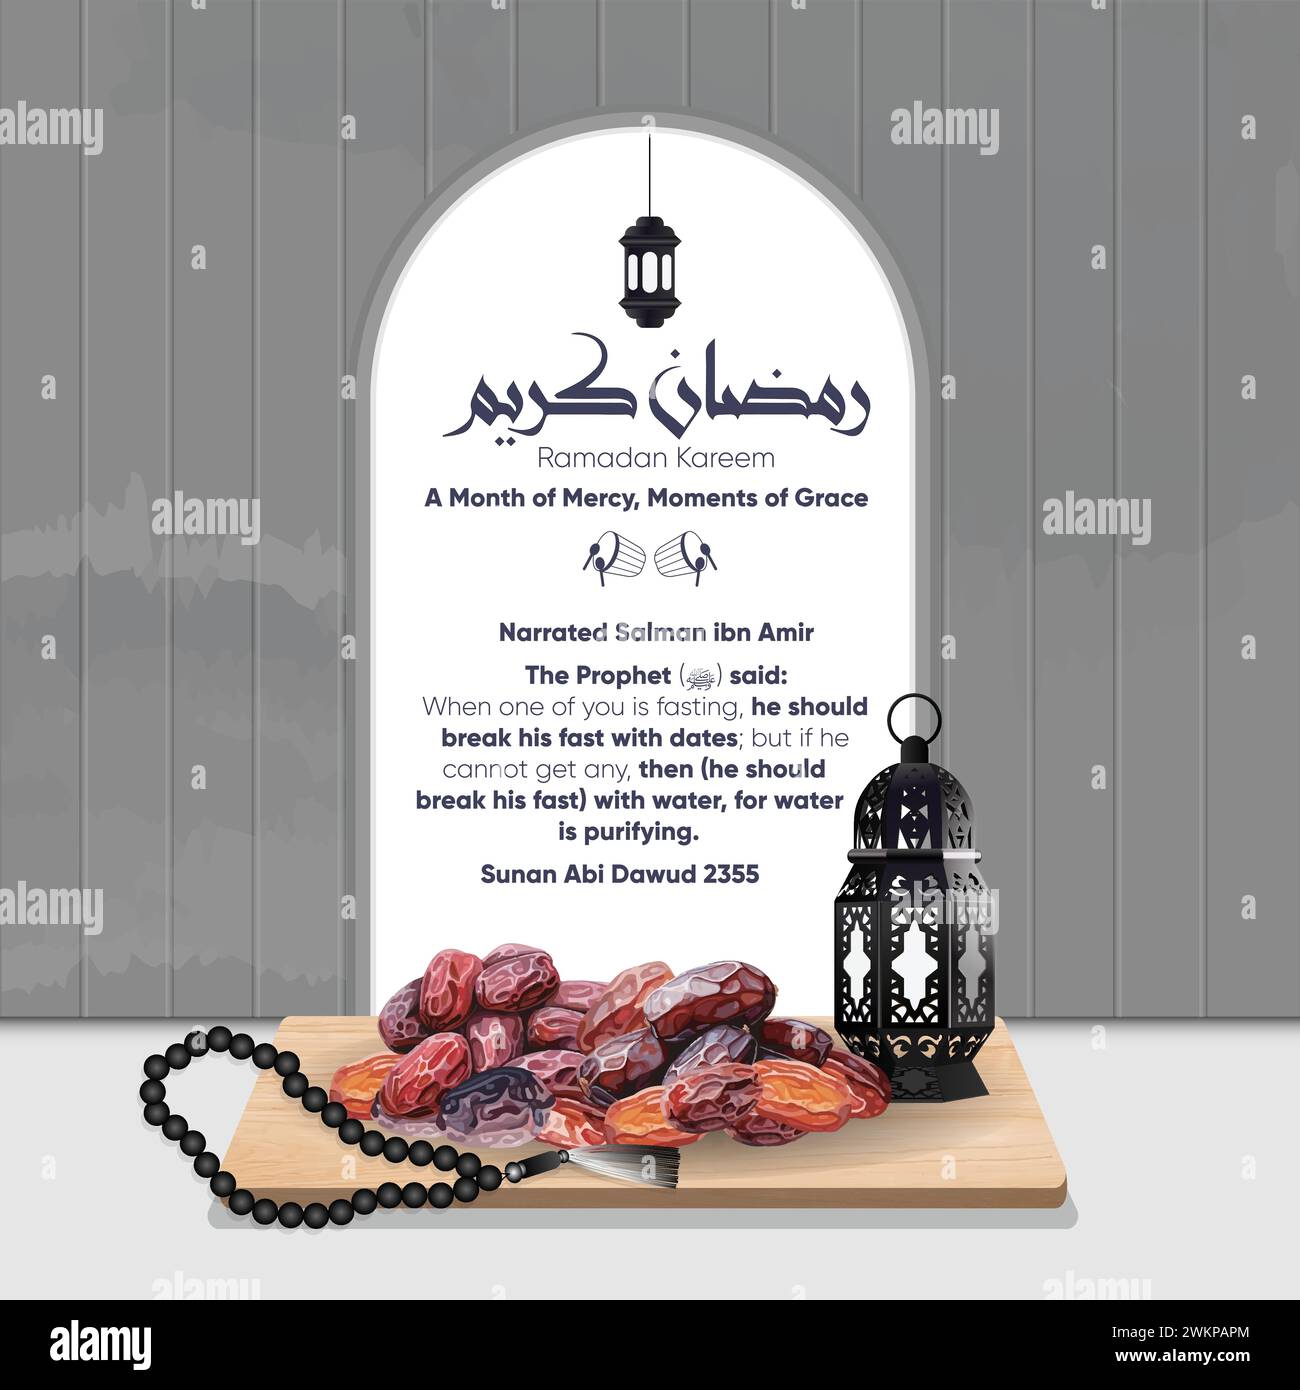 Concetto di digiuno e iftar a Ramadan Kareem, adornato con date illustrazioni e tasbih. L'illustrazione include l'hadith sul digiuno. Illustrazione Vettoriale